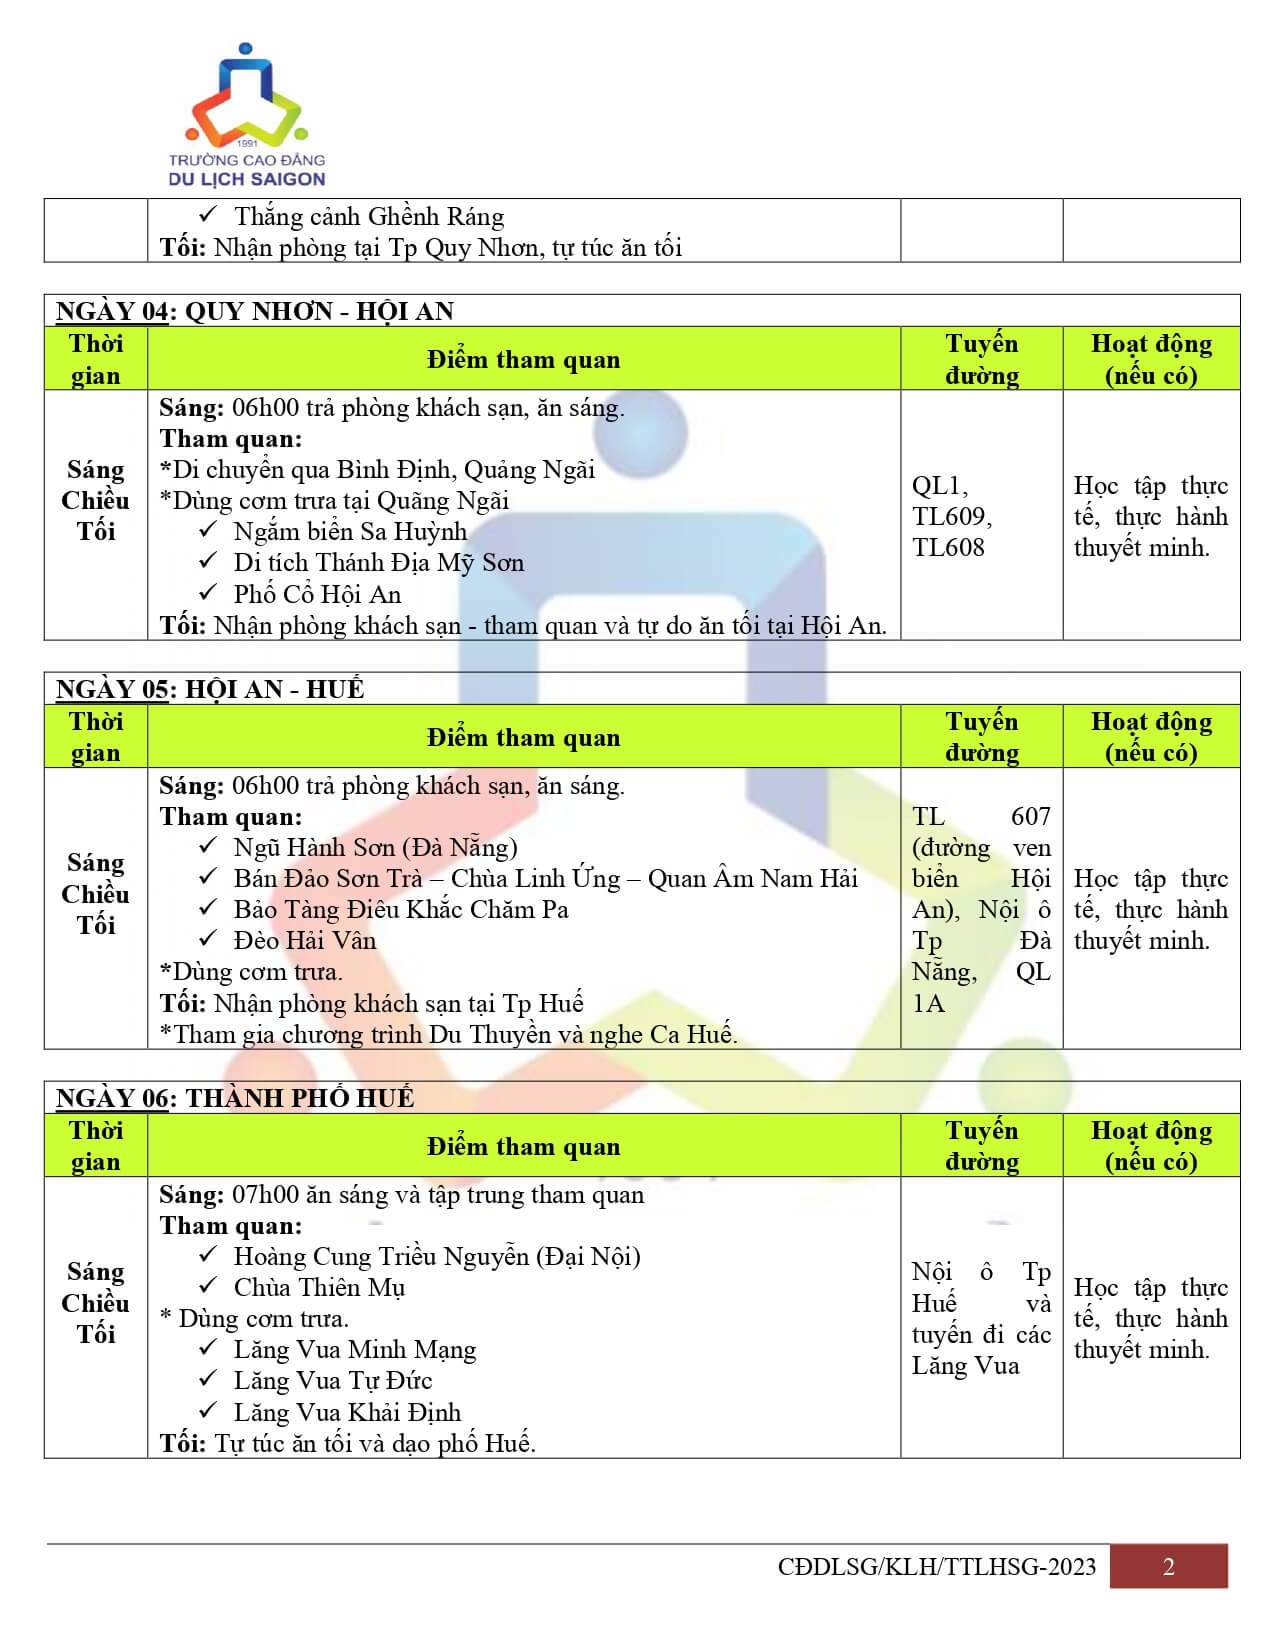 6- Chương trình Miền Trung - Miền Bắc (Xuyên Việt) (20 ngày 19 đêm)_page-0002